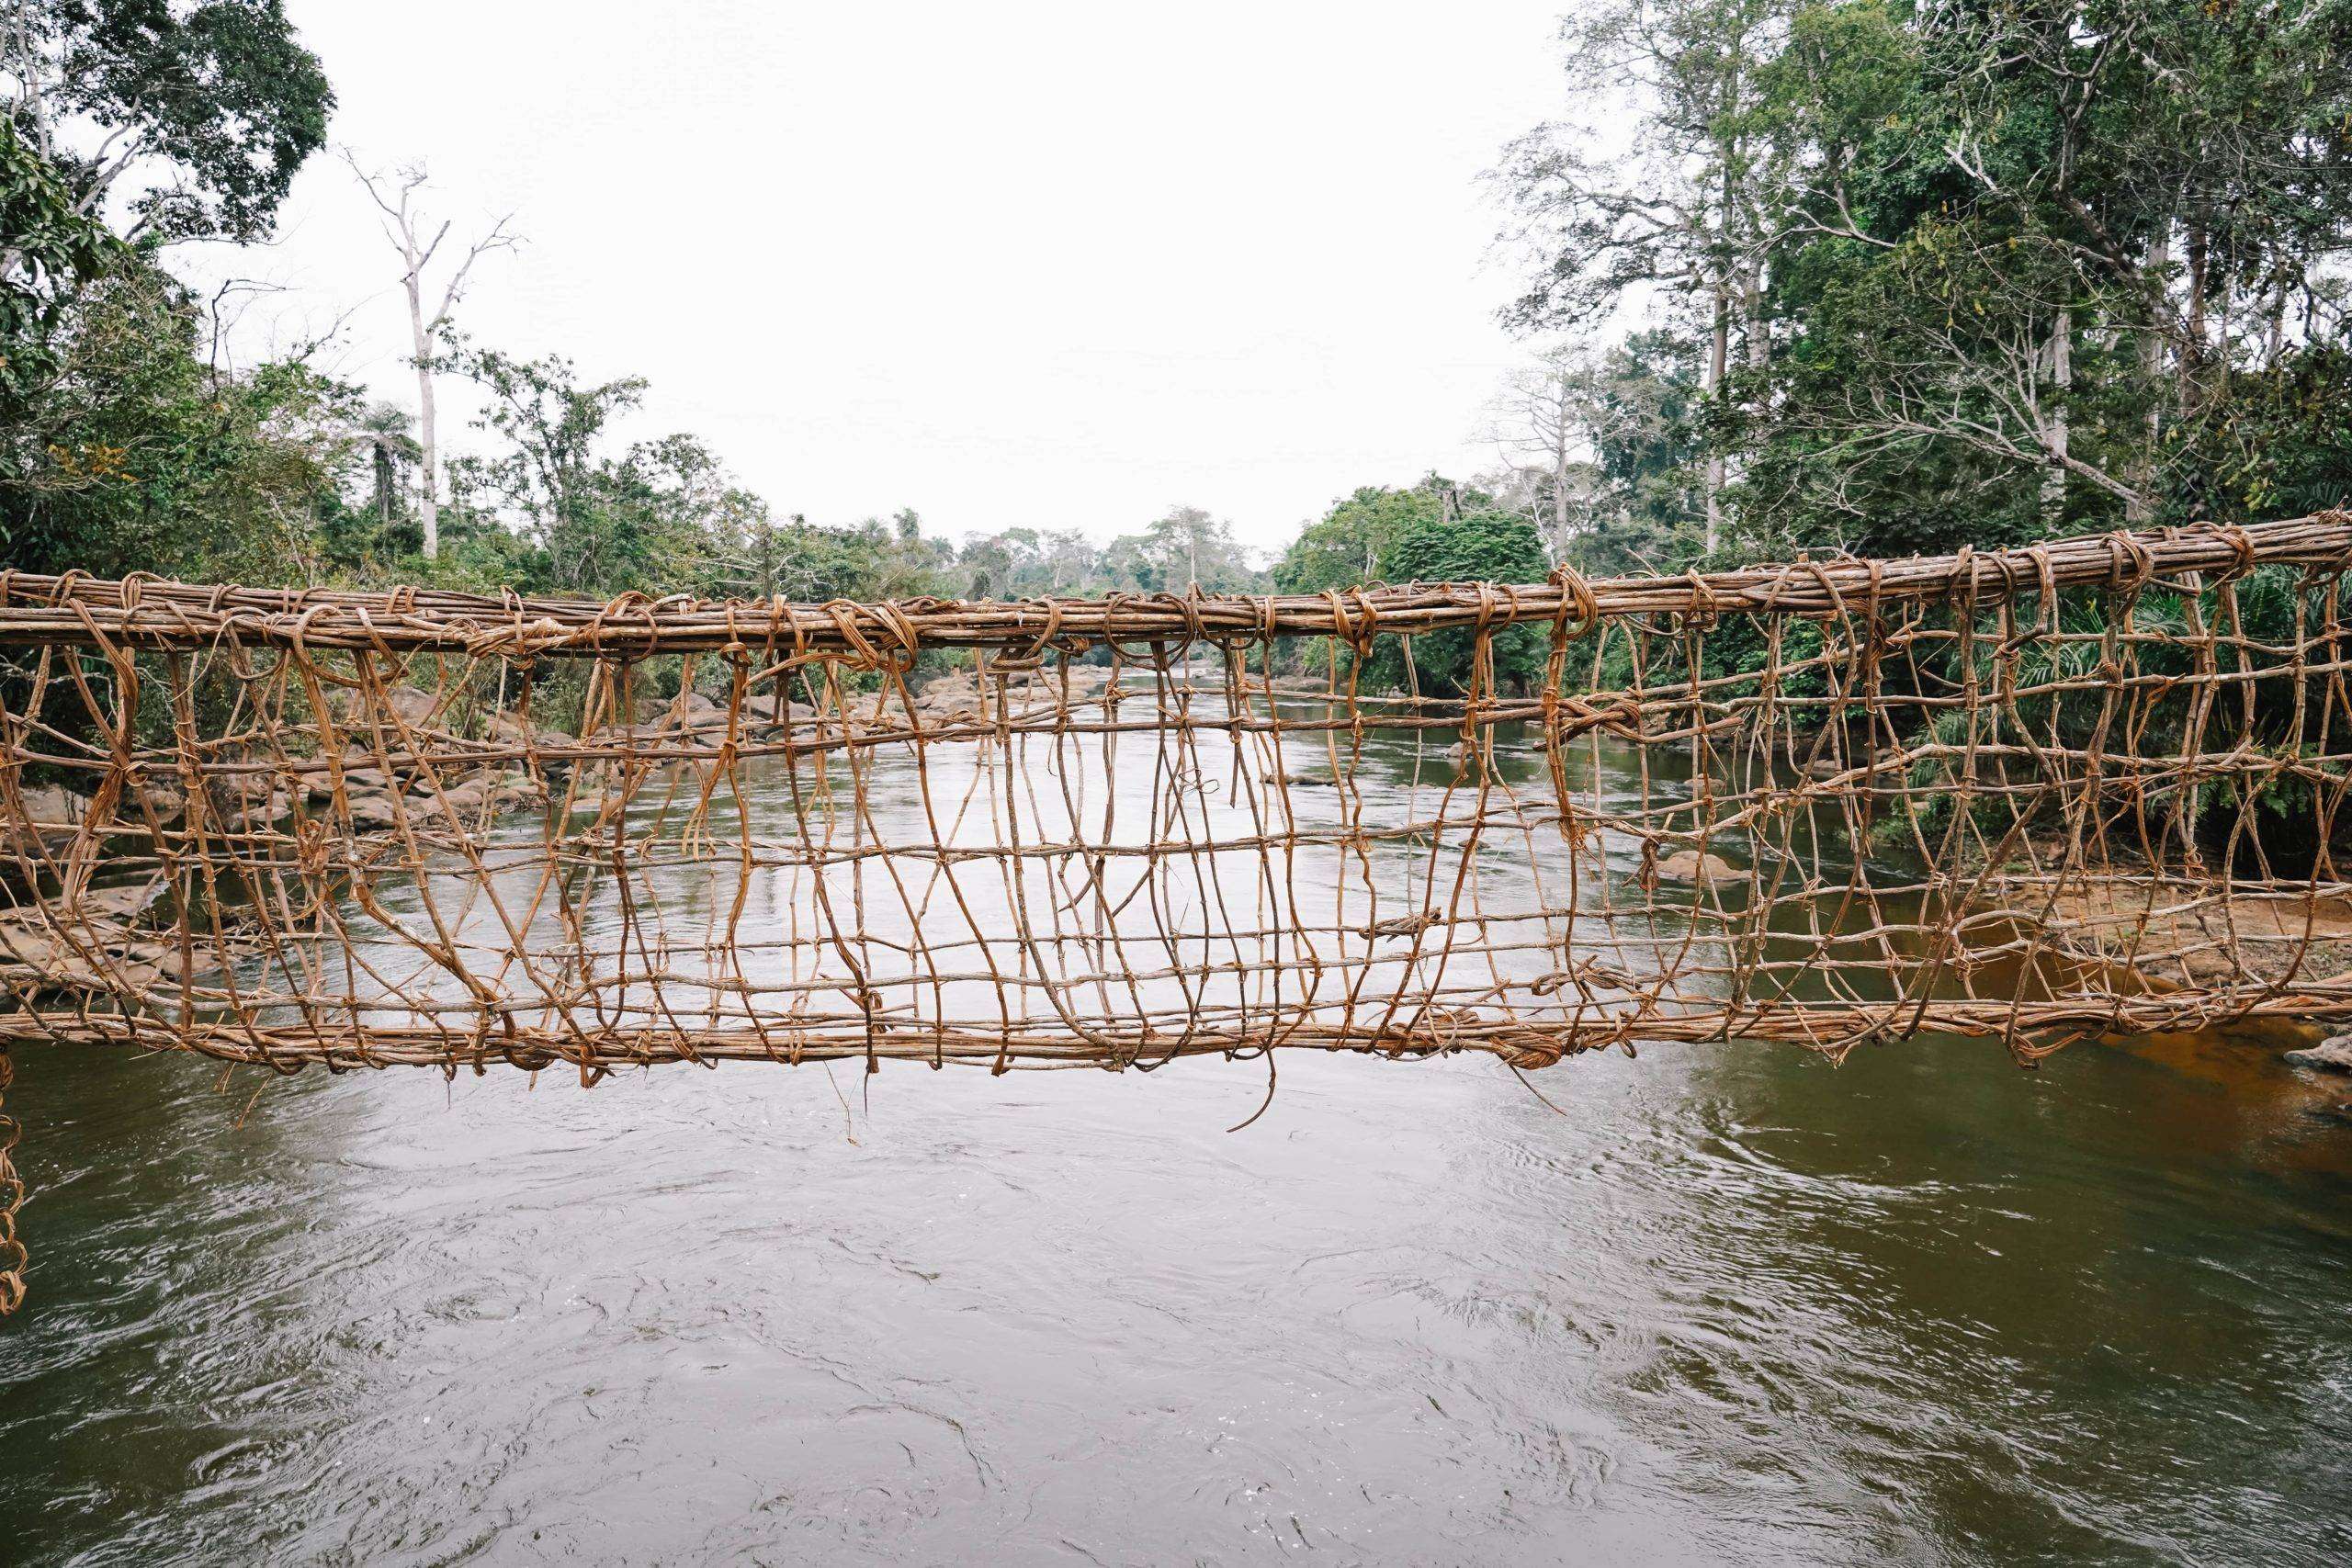 Un pont de corde tressé traditionnel enjambe une rivière tranquille, flanquée d'une verdure luxuriante dans ce qui semble être une forêt dense en Côte d'Ivoire.